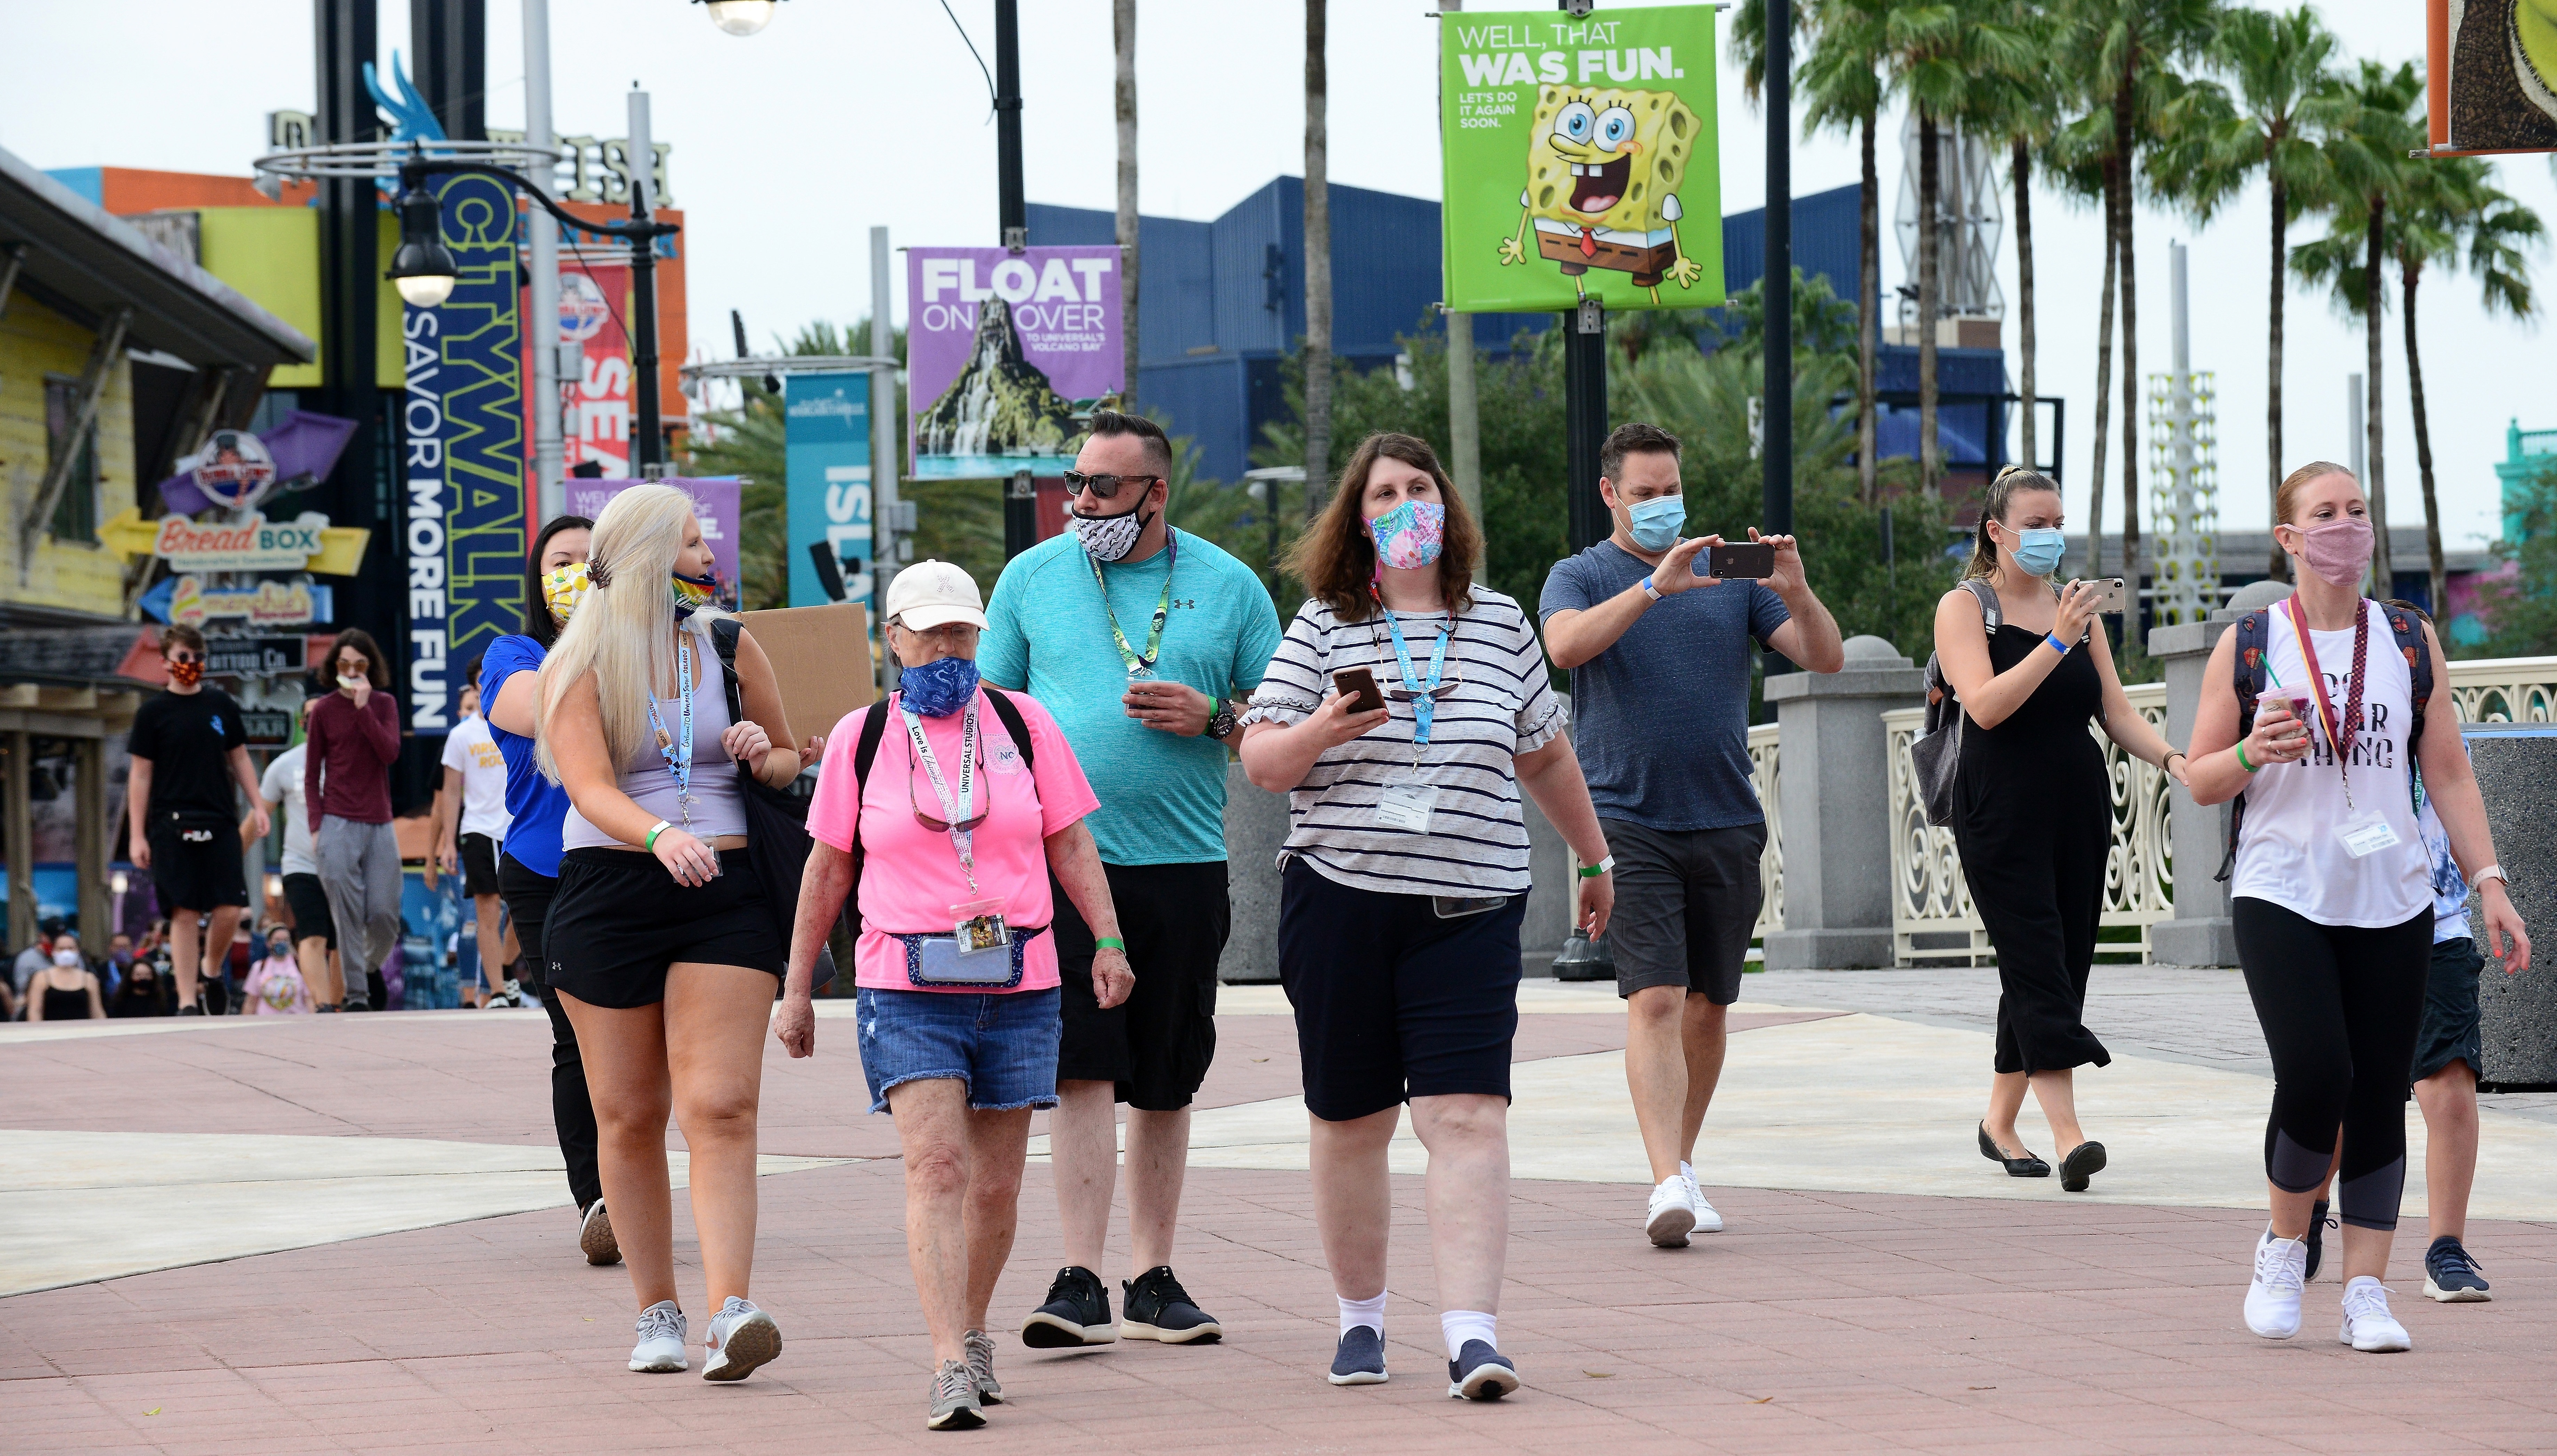 Disney World restableció el uso de mascarillas en sus parques de diversiones en Orlando. EFE/Gerardo Mora/Archivo
